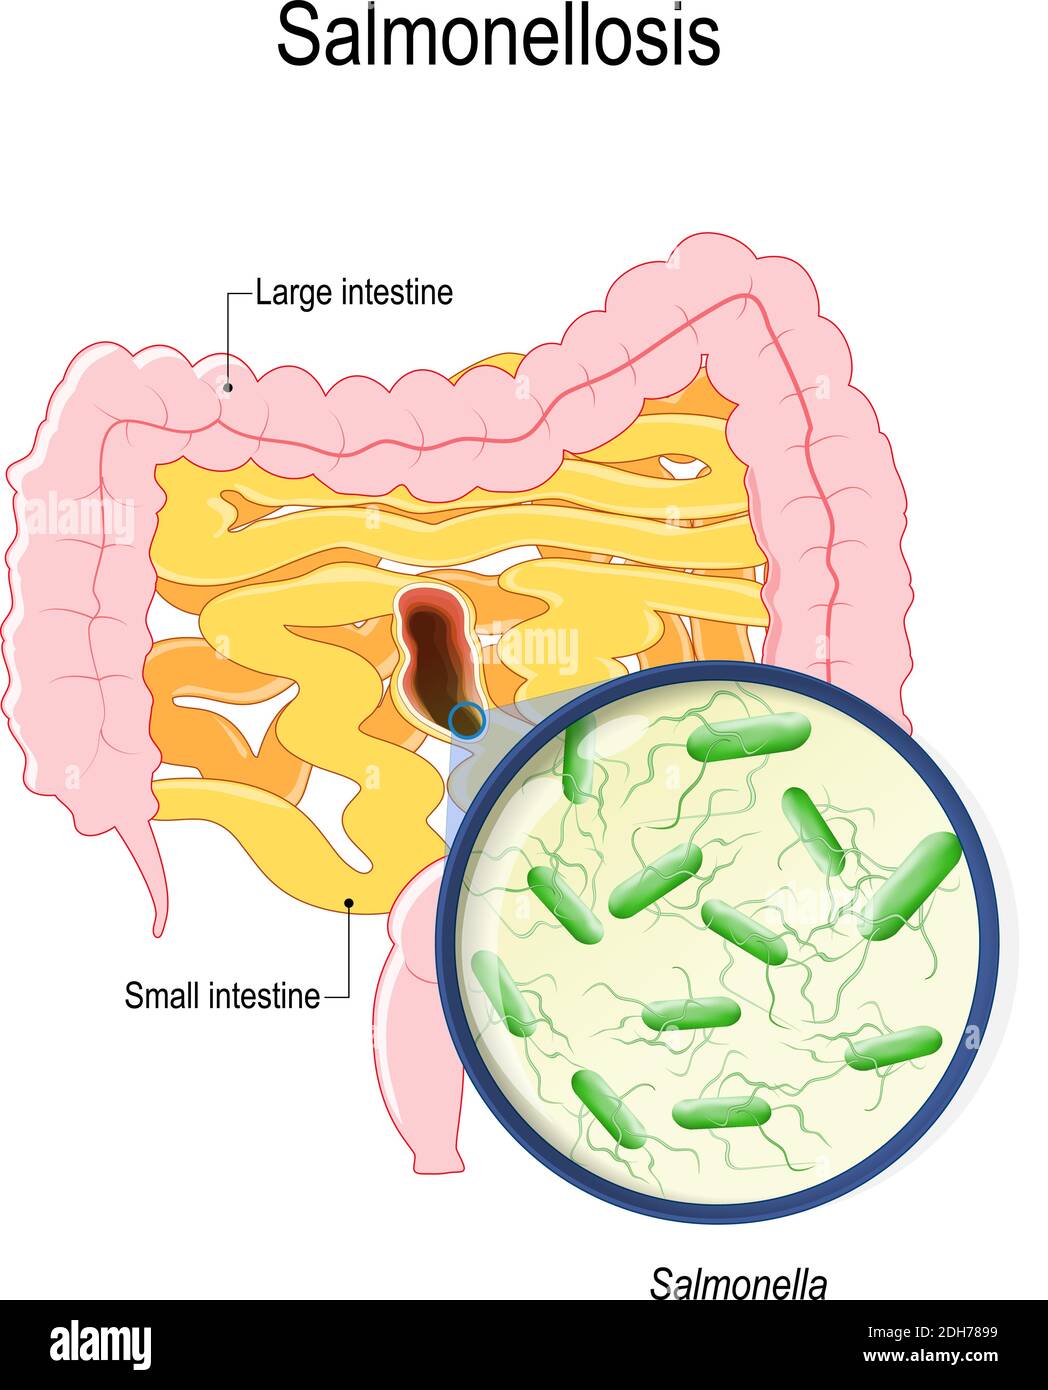 la salmonellose est une intoxication par la salmonelle à partir de poulet et d'œufs crus. intestins humains et bactérie qui causent cette maladie Illustration de Vecteur